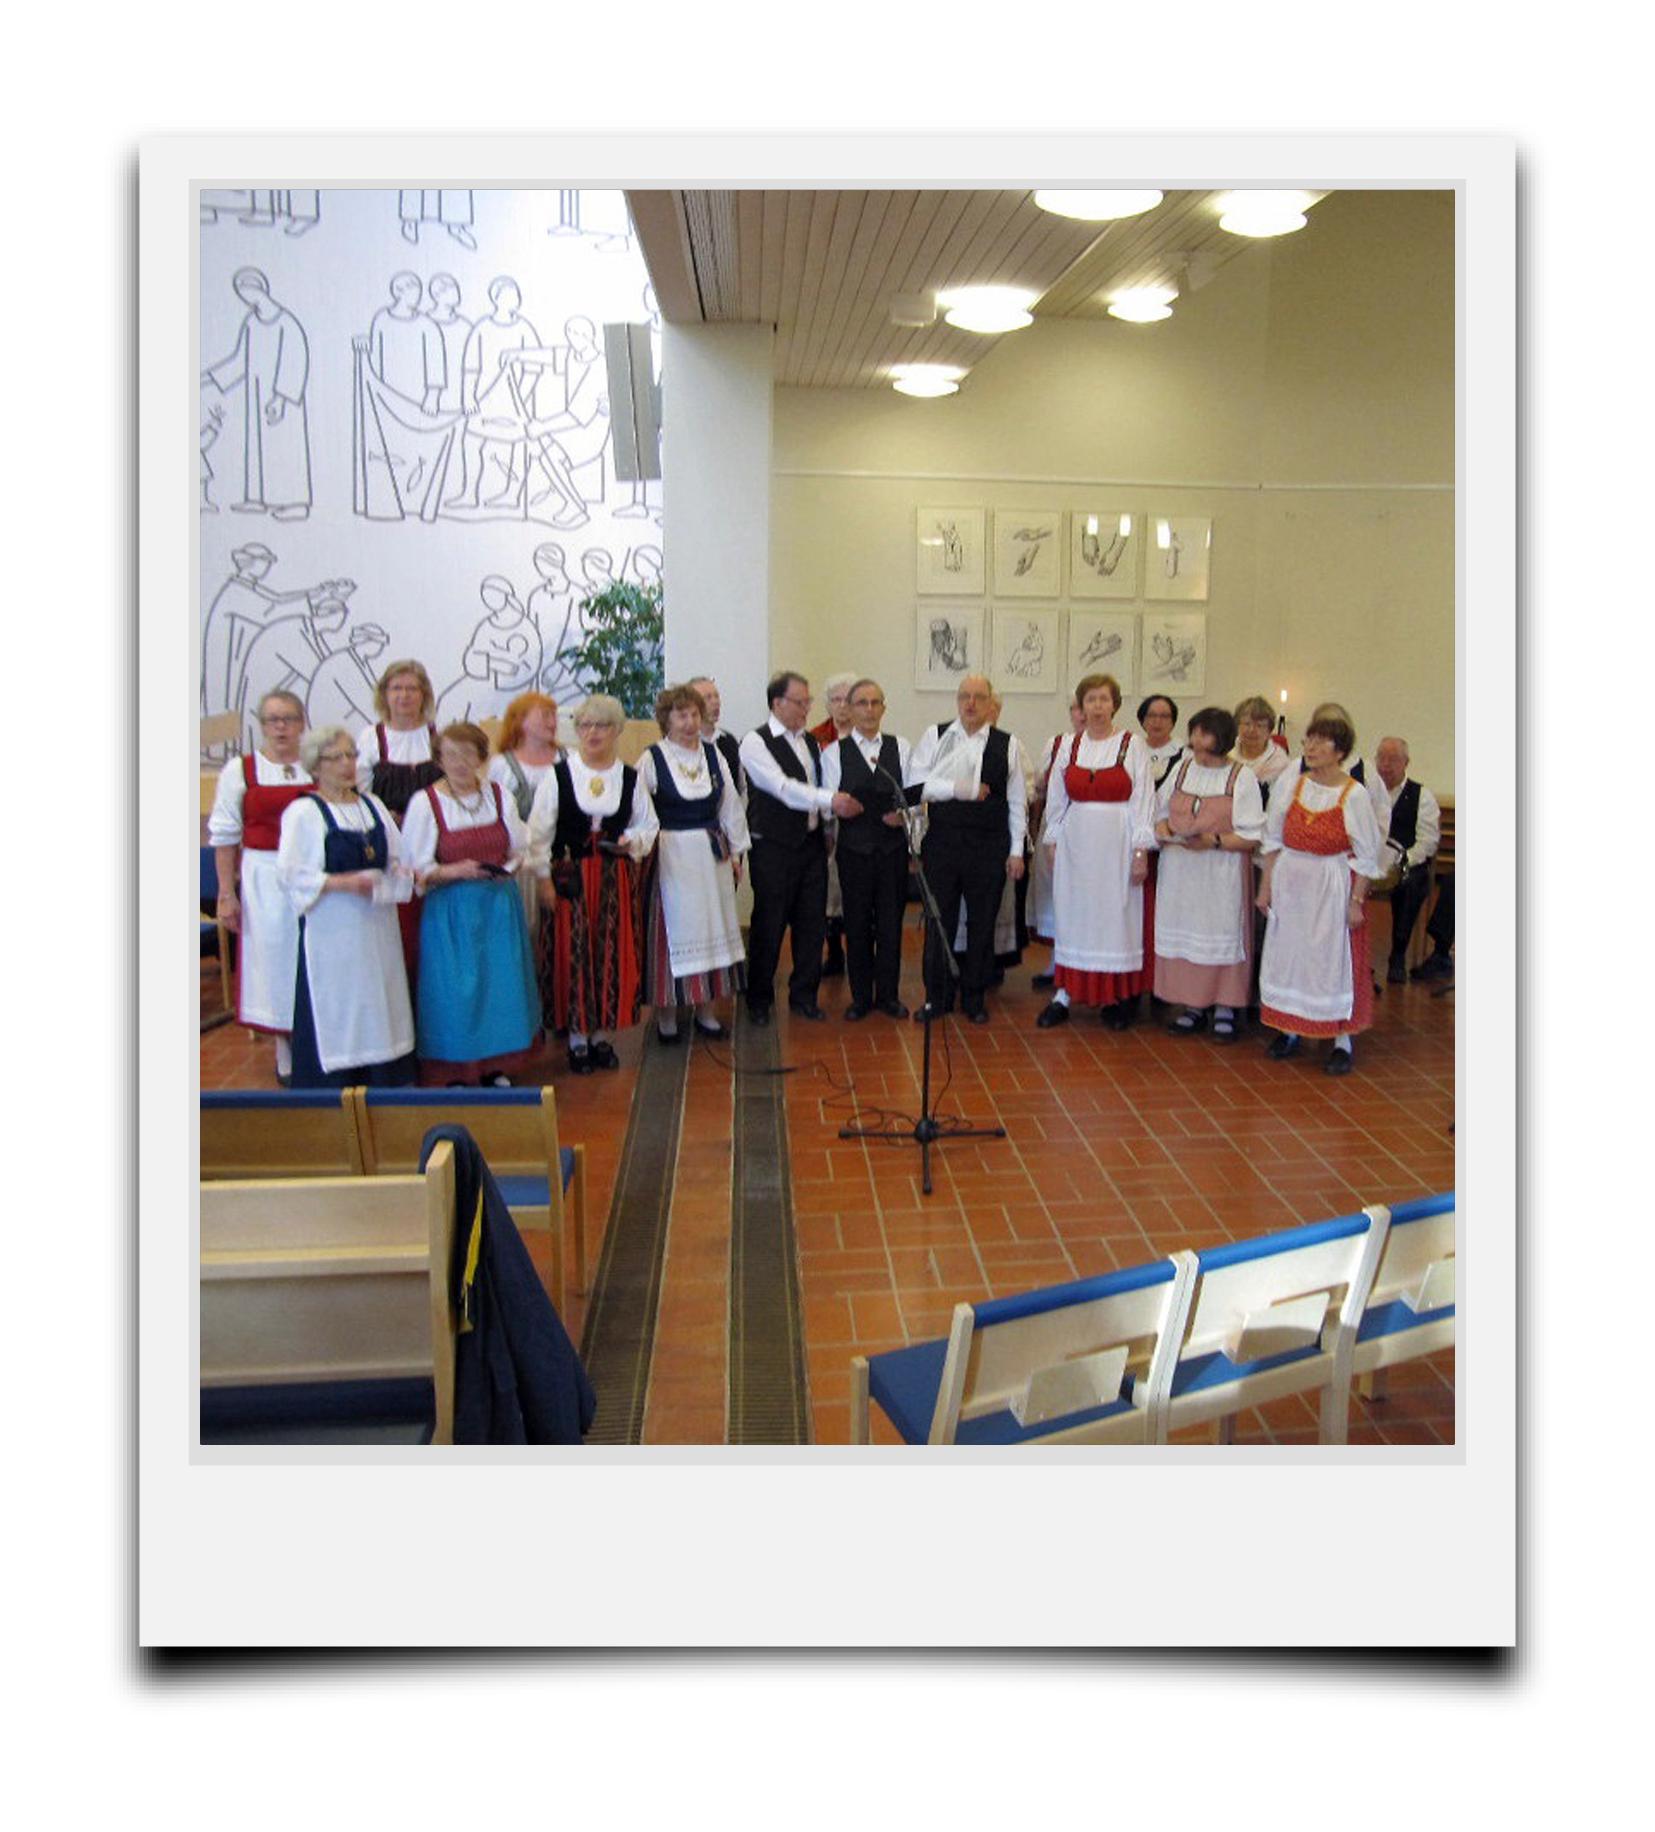 Polaroid kuvassa Vuosaaren kirkossa Sakarat Laulupelimannit esiintymässä, ihmisiä kansallispuvuissa.